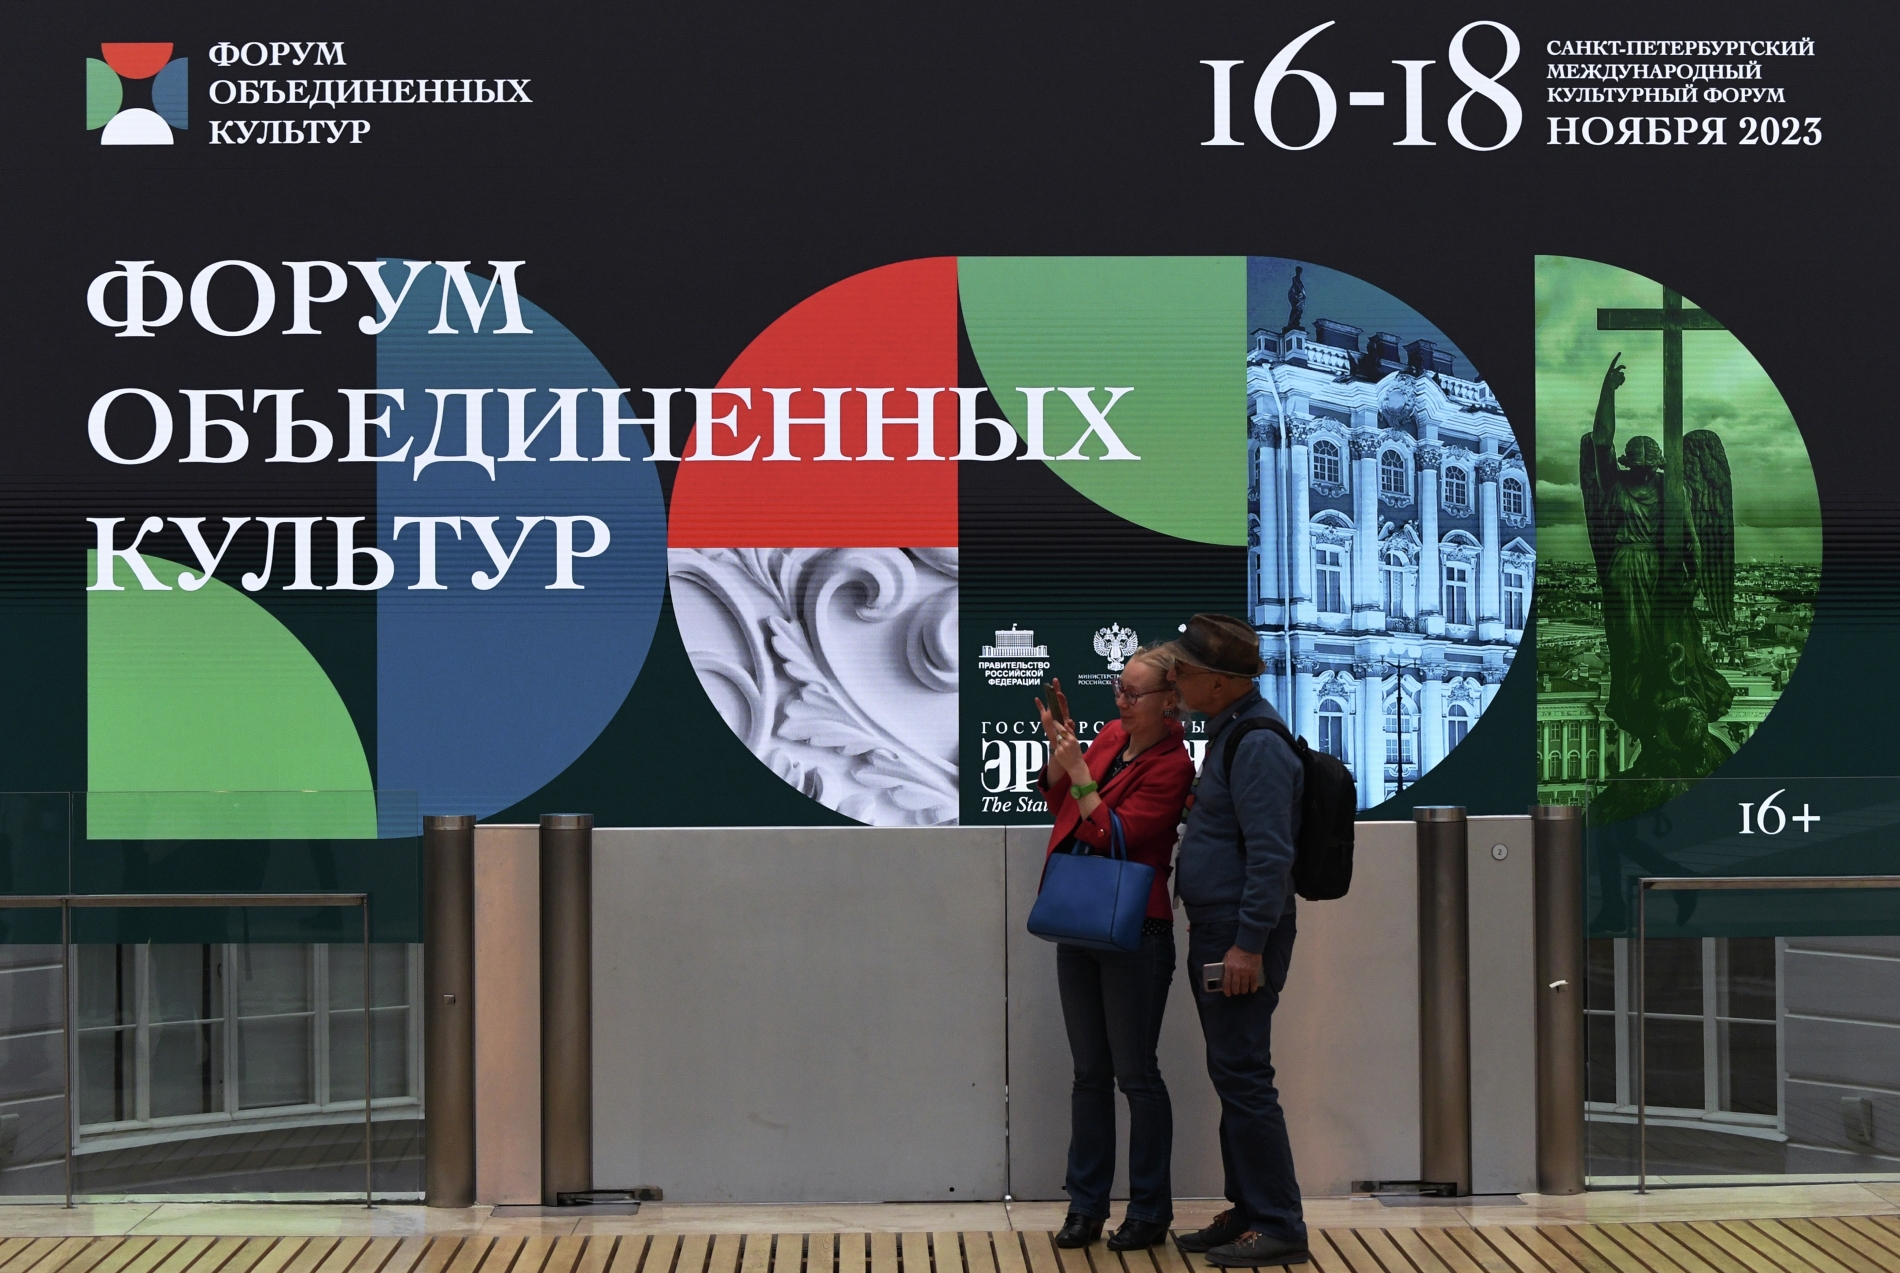 Дмитрий Мезенцев: потенциал сотрудничества России и Беларуси в культурной сфере далеко не исчерпан